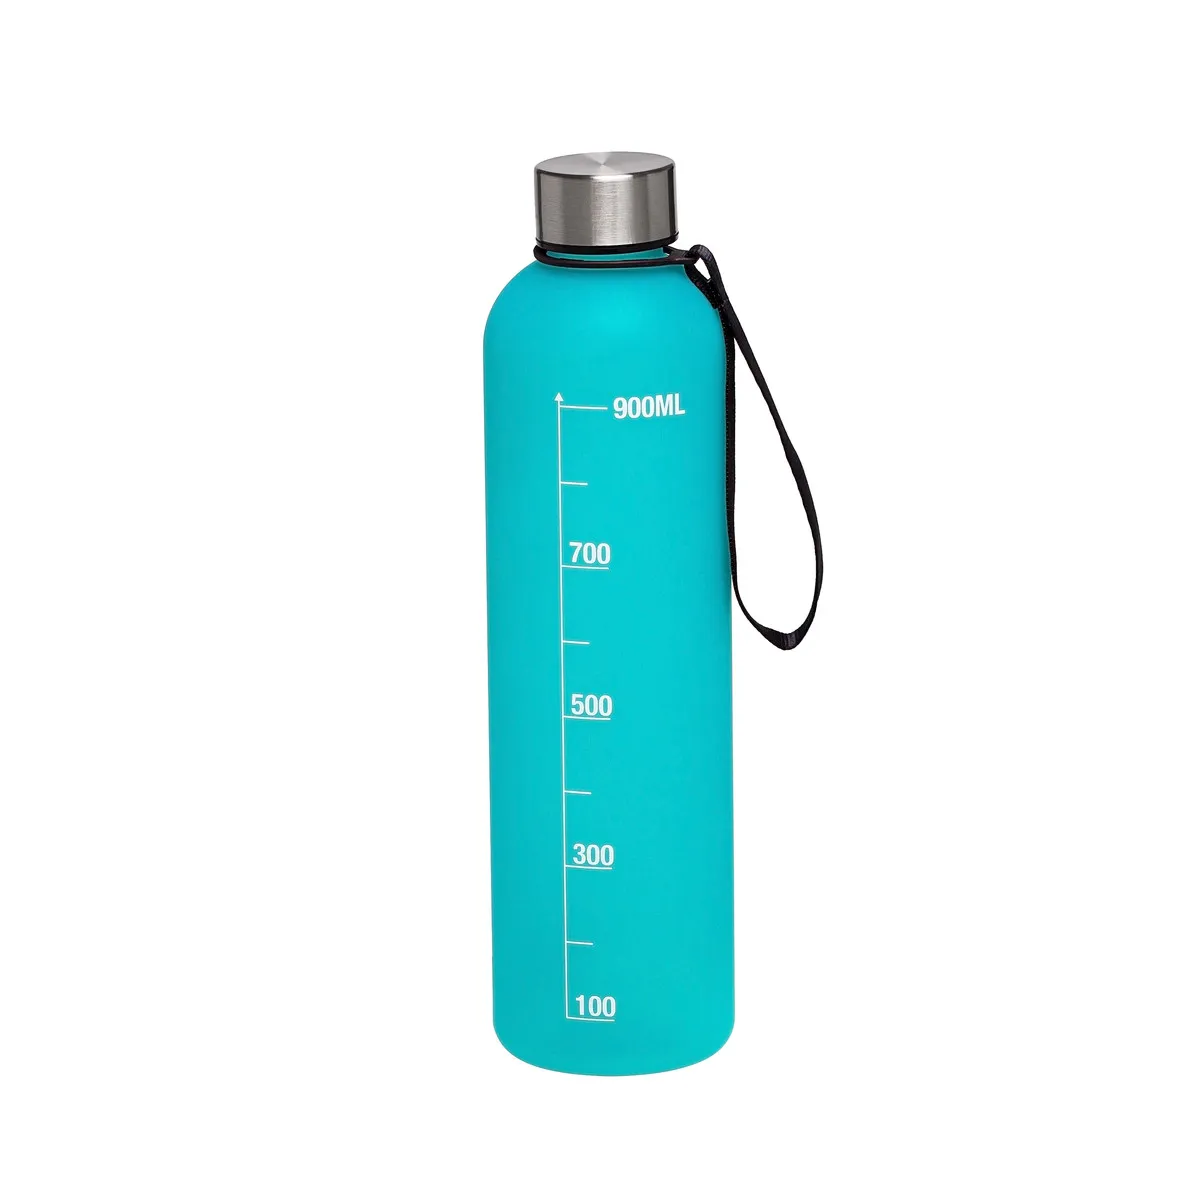 Imagem do produto: Garrafa de água com graduação 1L 